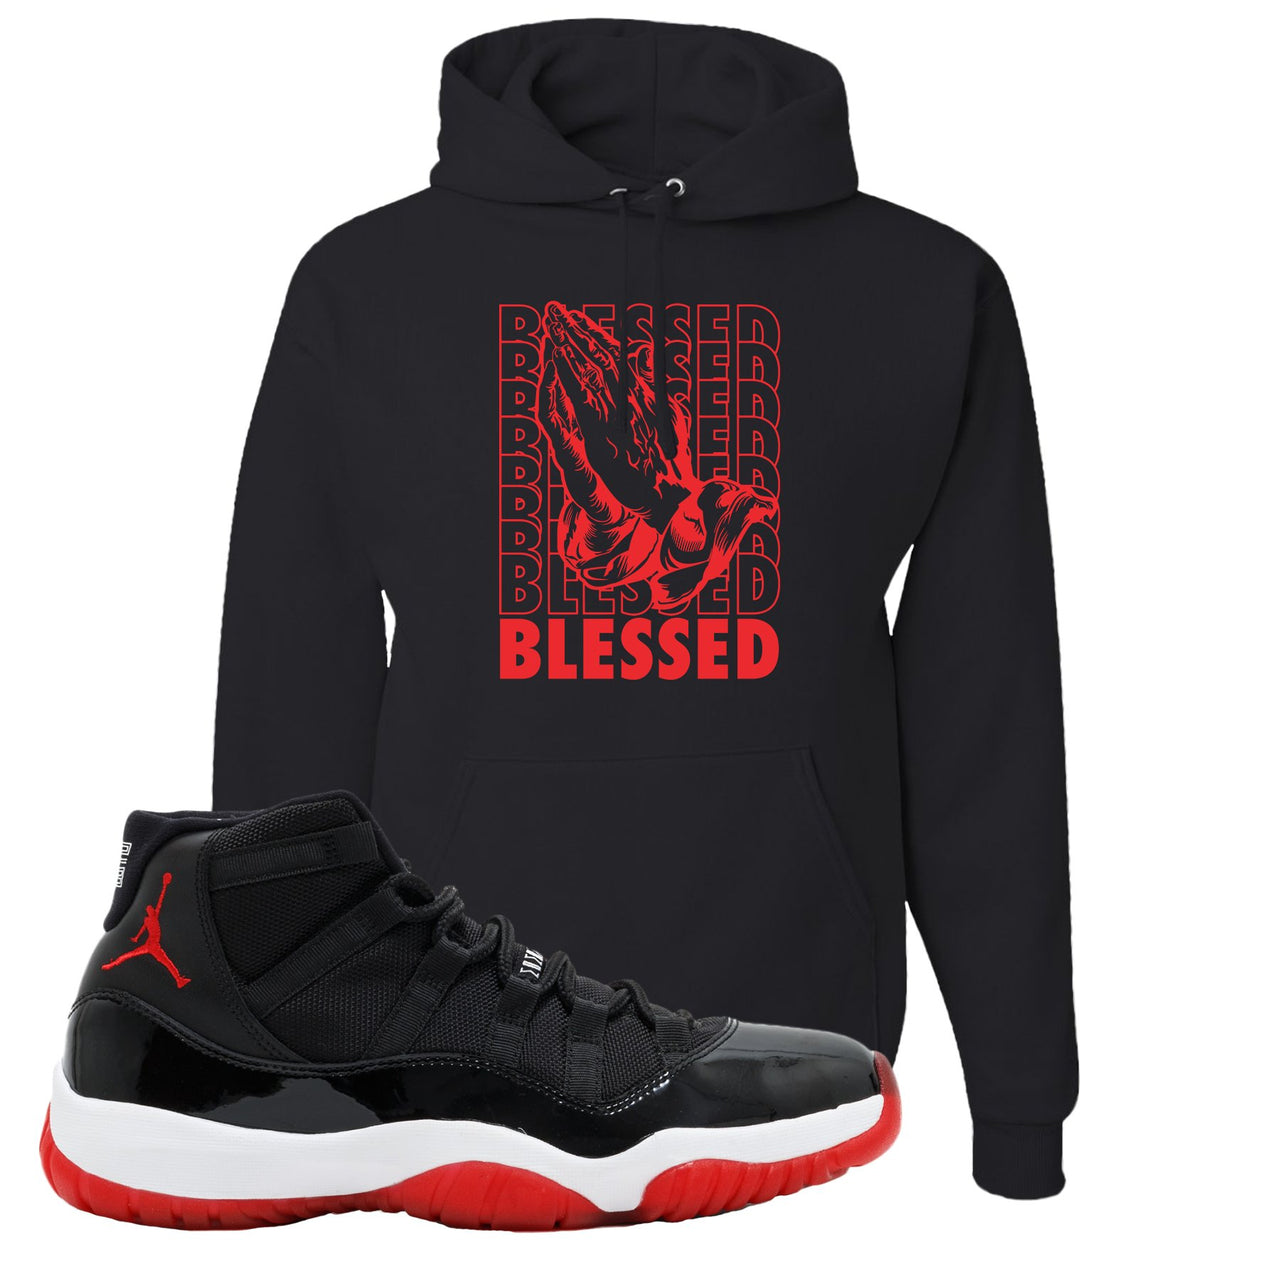 Jordan 11 Bred Blessed Black Sneaker Hook Up Pullover Hoodie